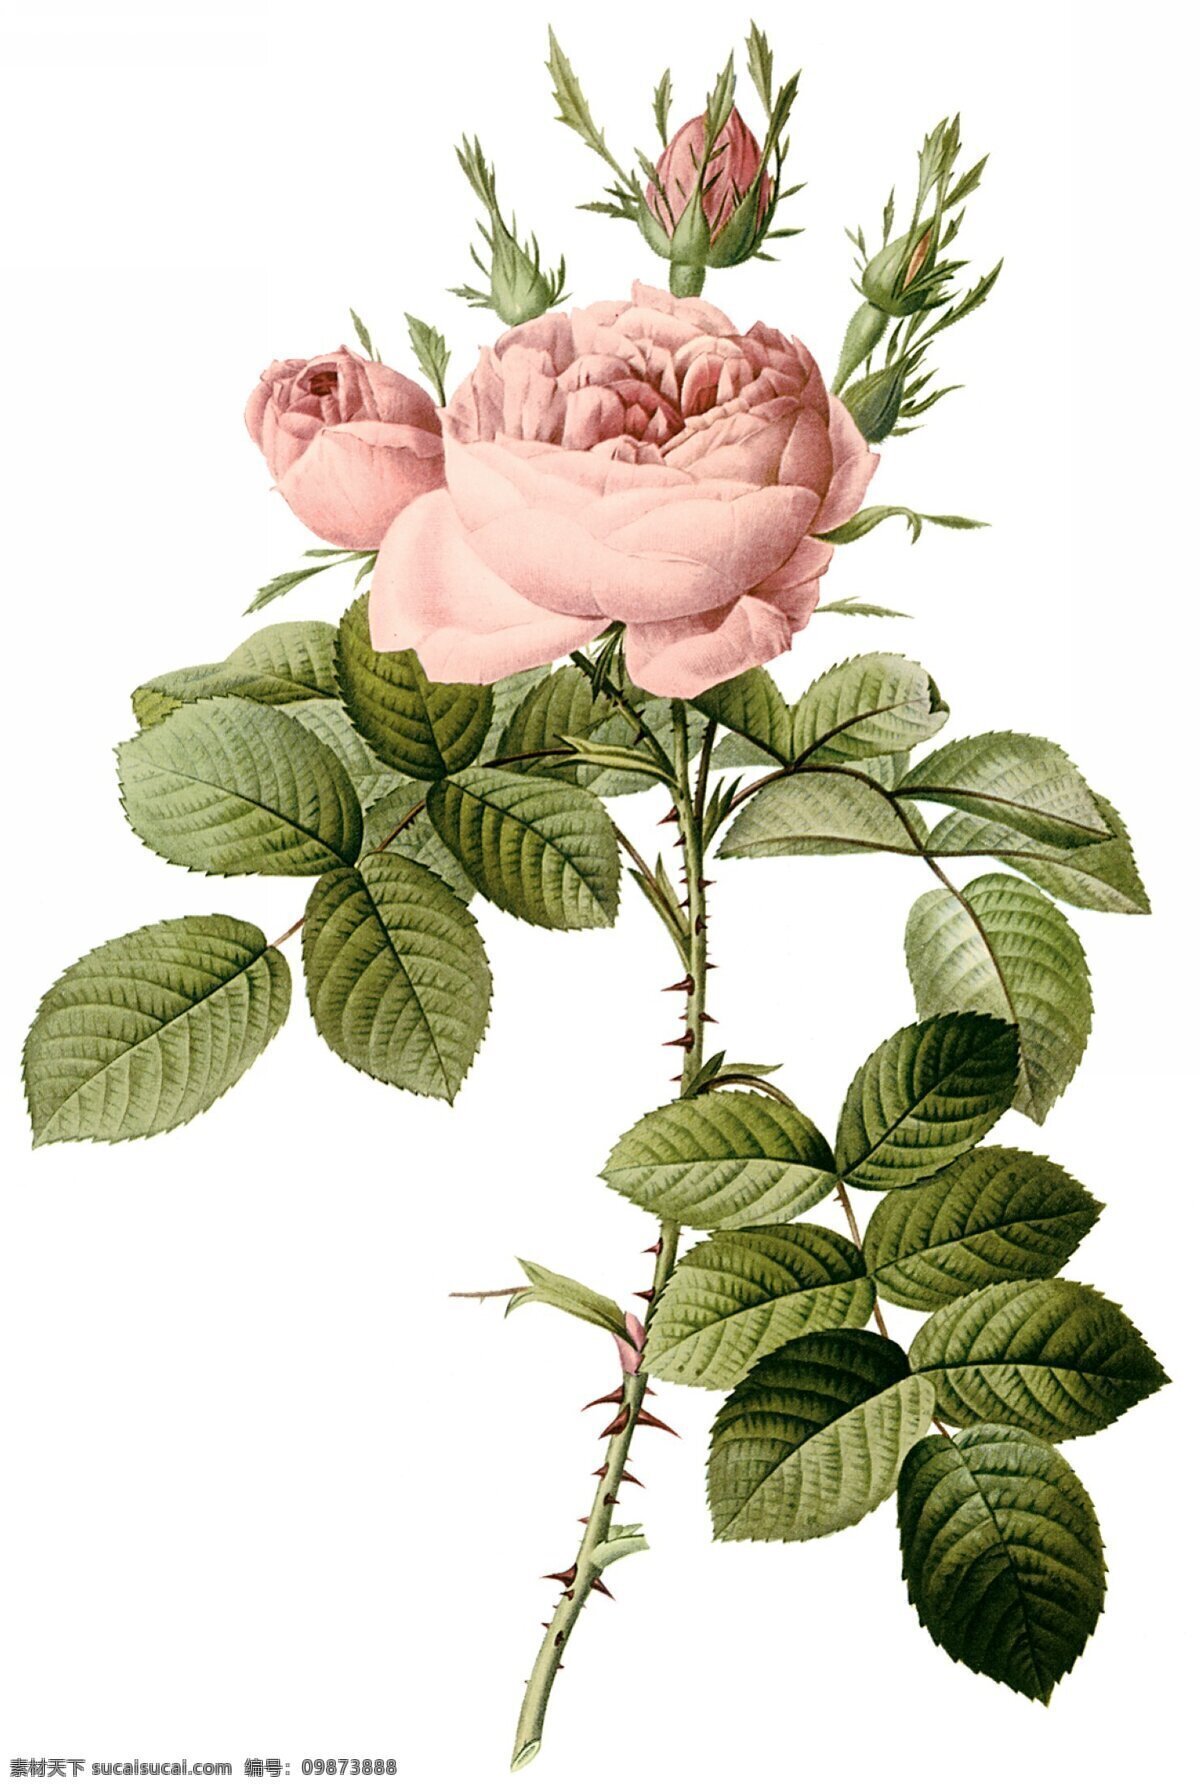 手绘玫瑰 玫瑰 手绘 水彩 花边 花艺 绘画书法 文化艺术